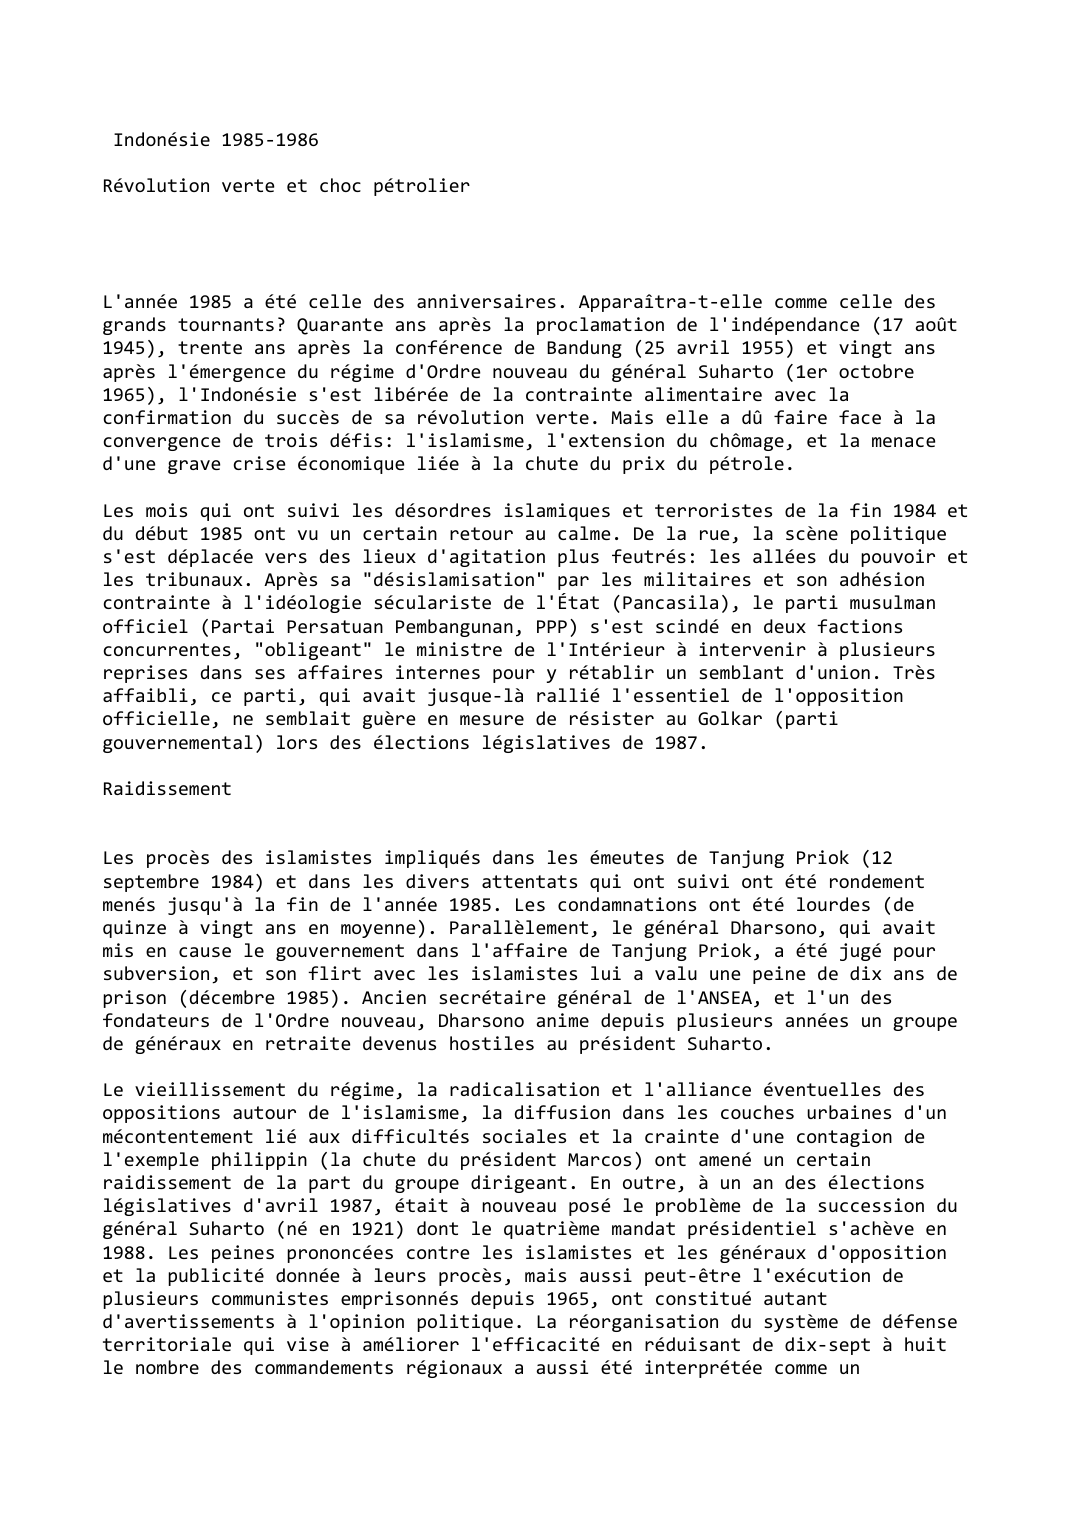 Prévisualisation du document Indonésie 1985-1986

Révolution verte et choc pétrolier